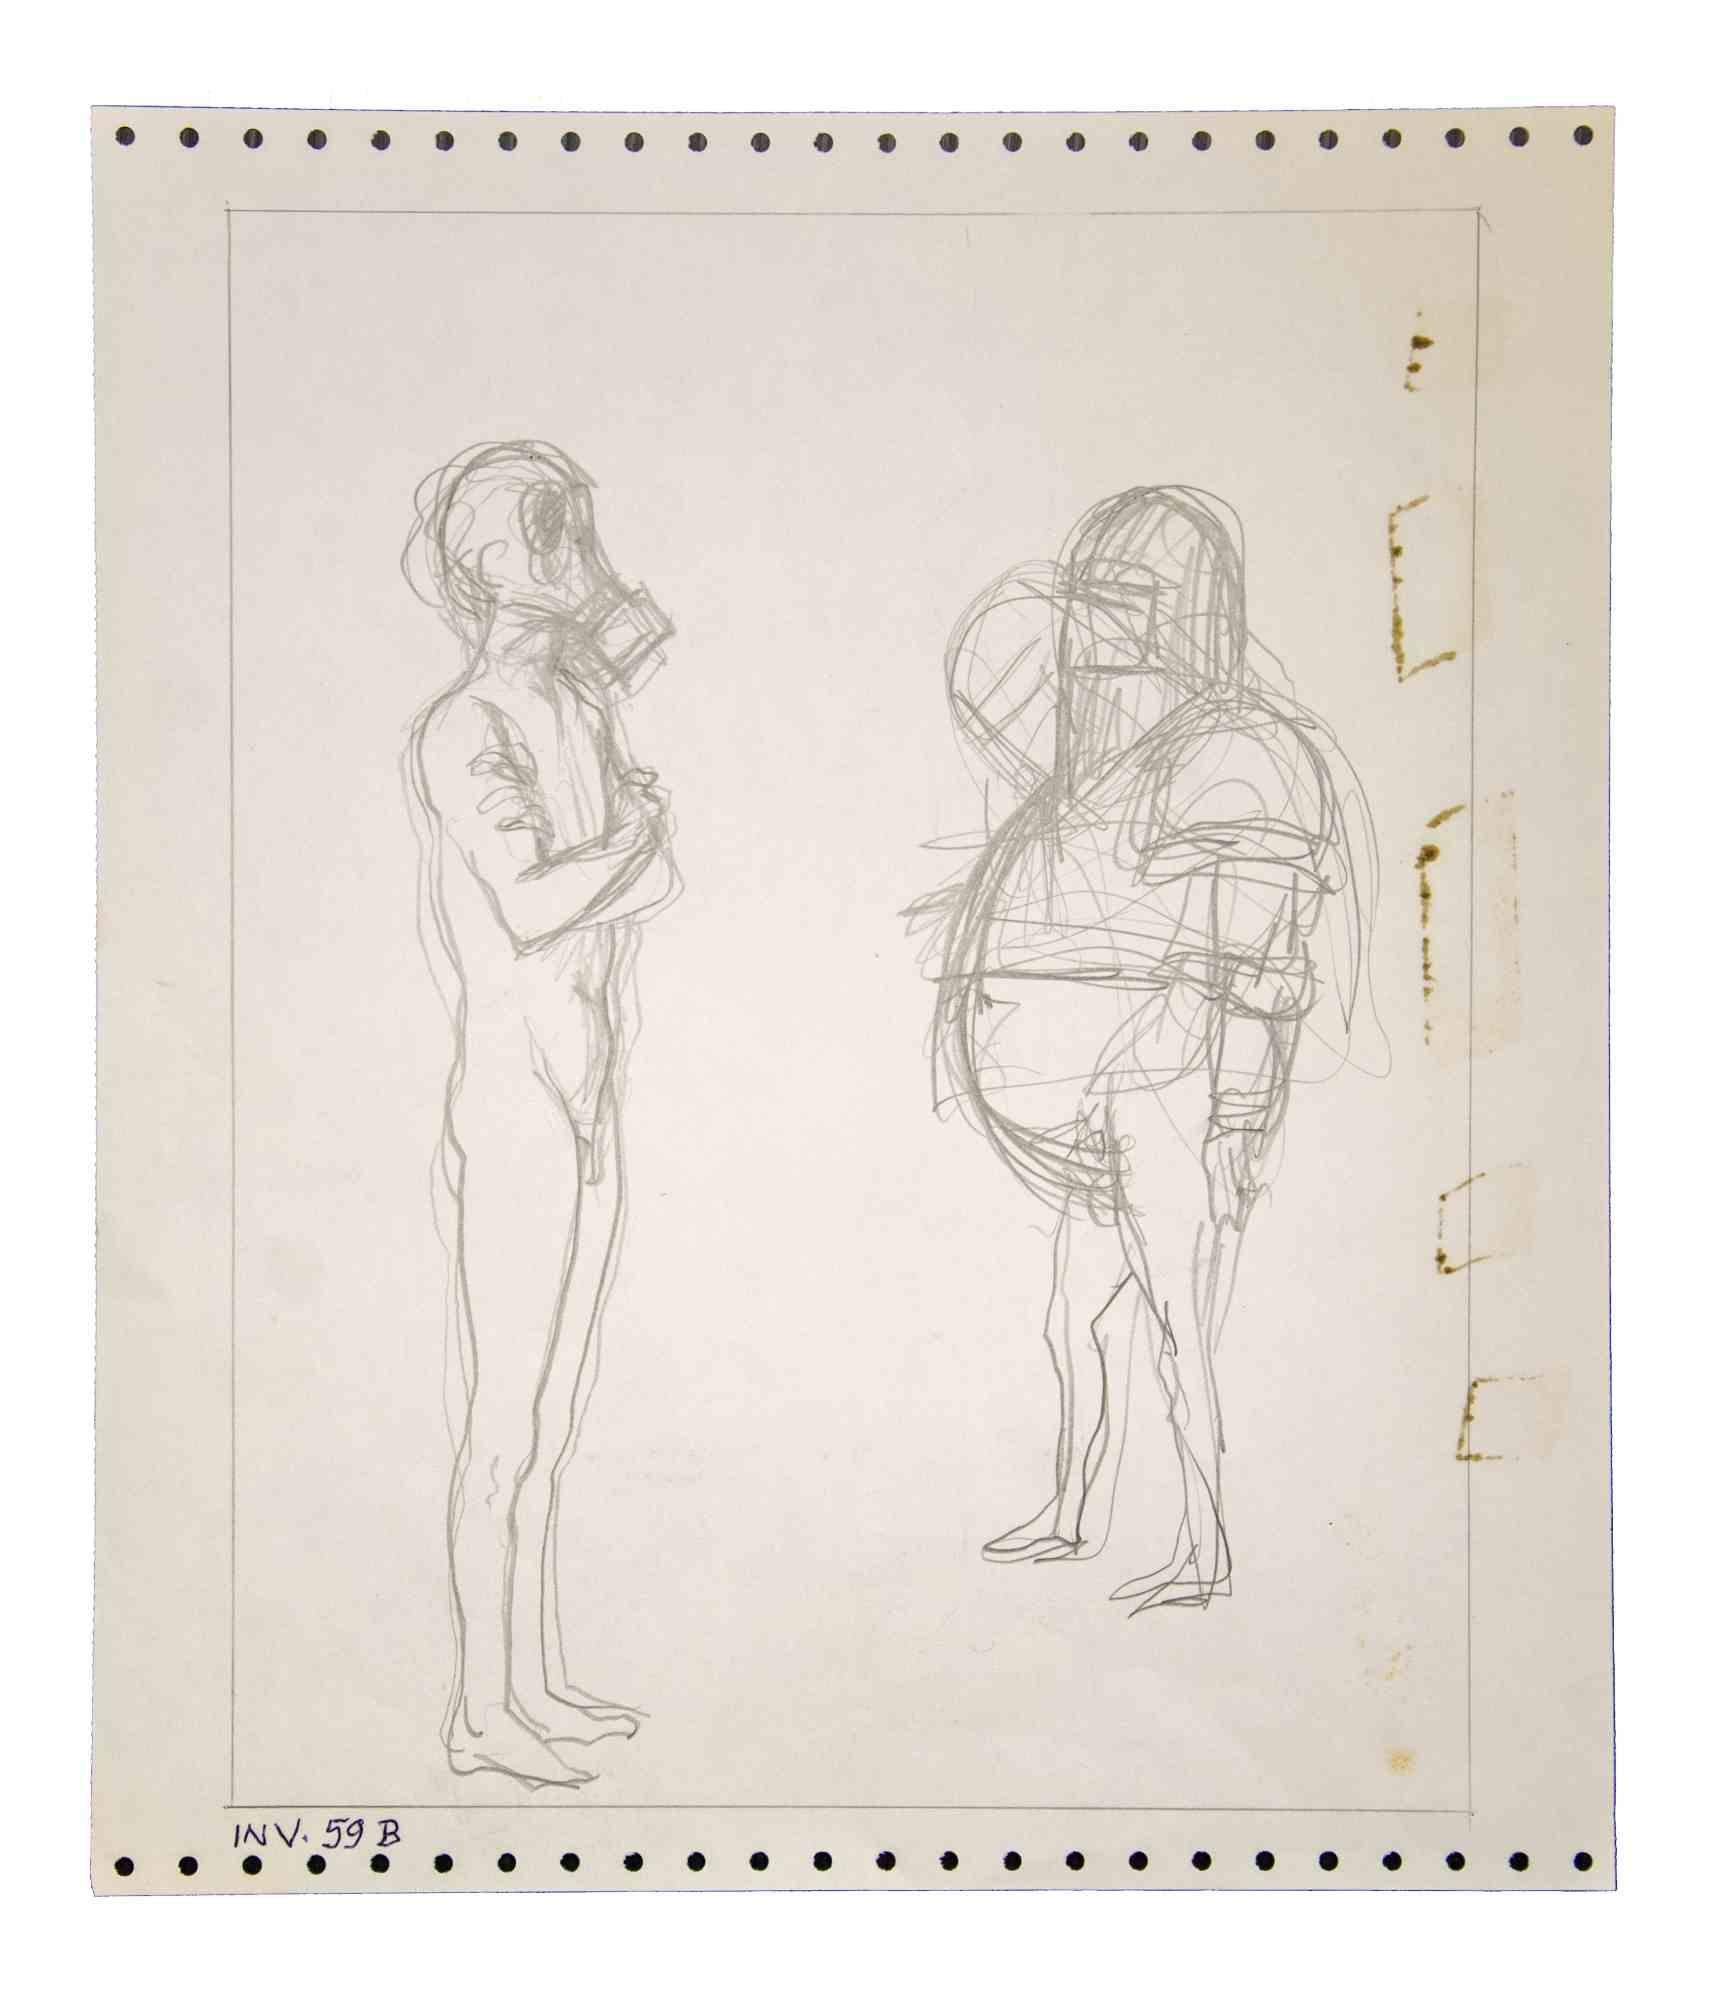 Figuren mit Masken ist ein originales zeitgenössisches Kunstwerk, das in den 70er Jahren von dem italienischen zeitgenössischen Künstler  Leo Guida  (1992 - 2017).

Originalzeichnung in Bleistift auf elfenbeinfarbenem Papier.

Gute Bedingungen.

